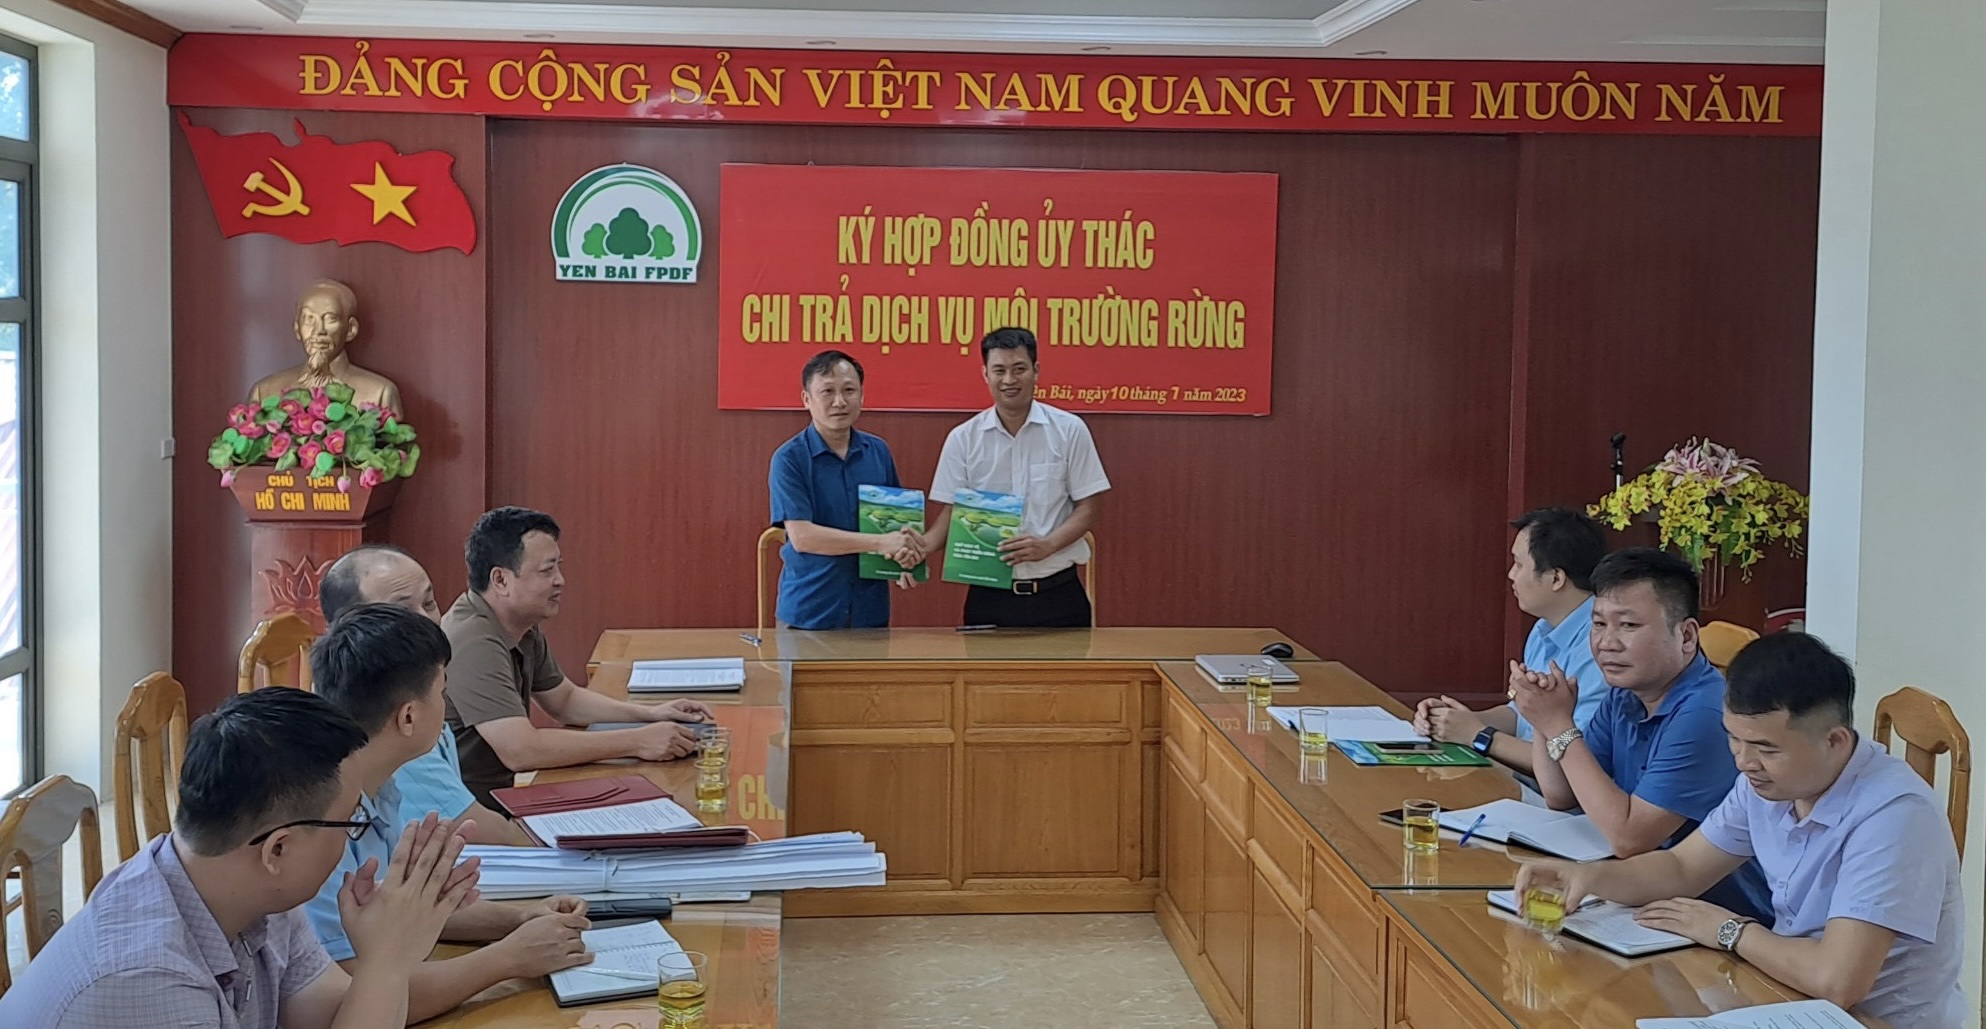 Quỹ Bảo vệ và phát triển rừng tỉnh Yên Bái tiếp tục ký kết hợp đồng ủy thác chi trả DVMTR trong năm 2023 